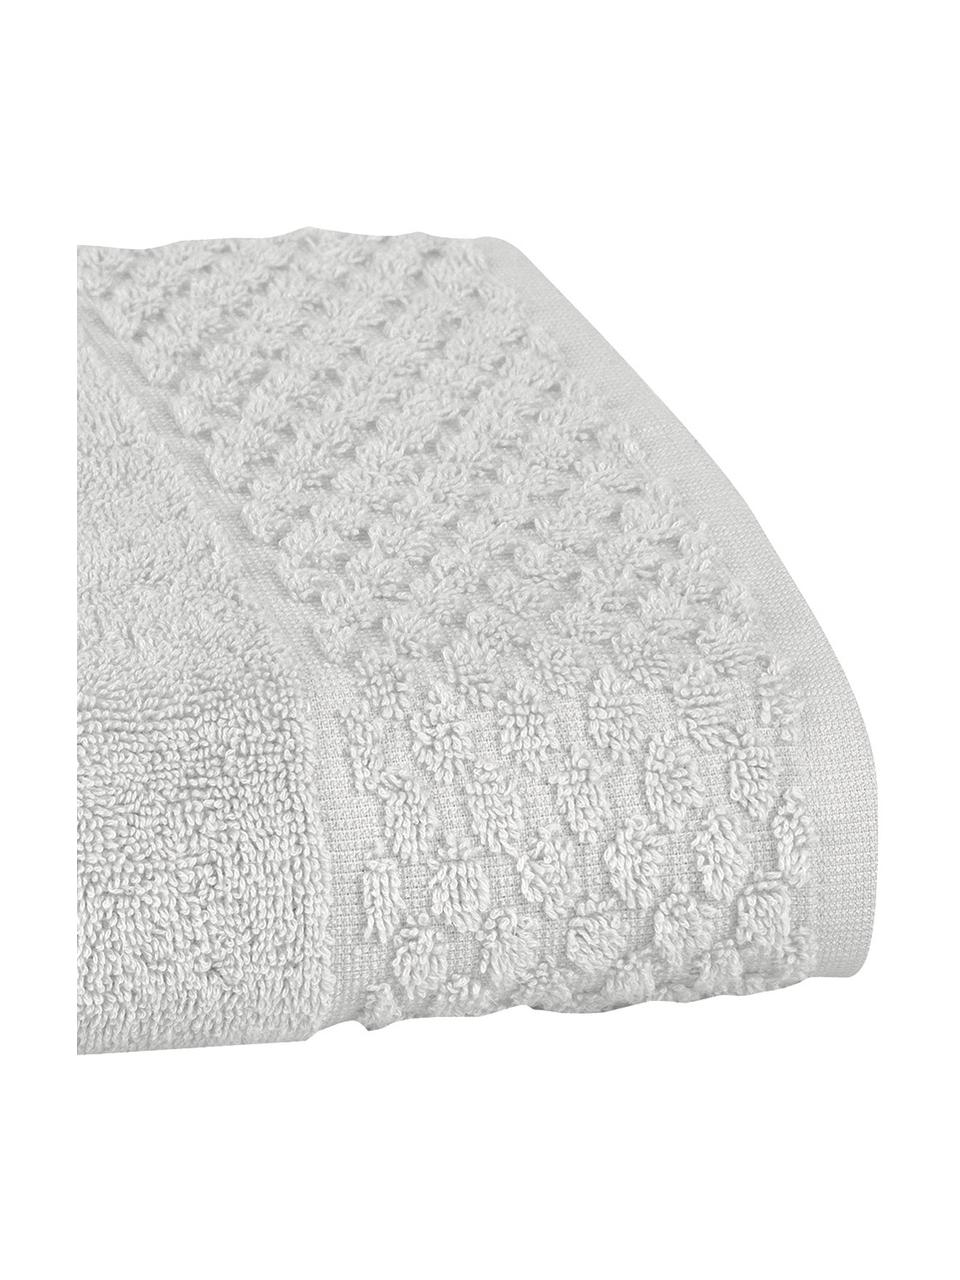 Handdoek Katharina in verschillende formaten, met honingraatpatroon, Lichtgrijs, Handdoek, B 50 x L 100 cm, 2 stuks